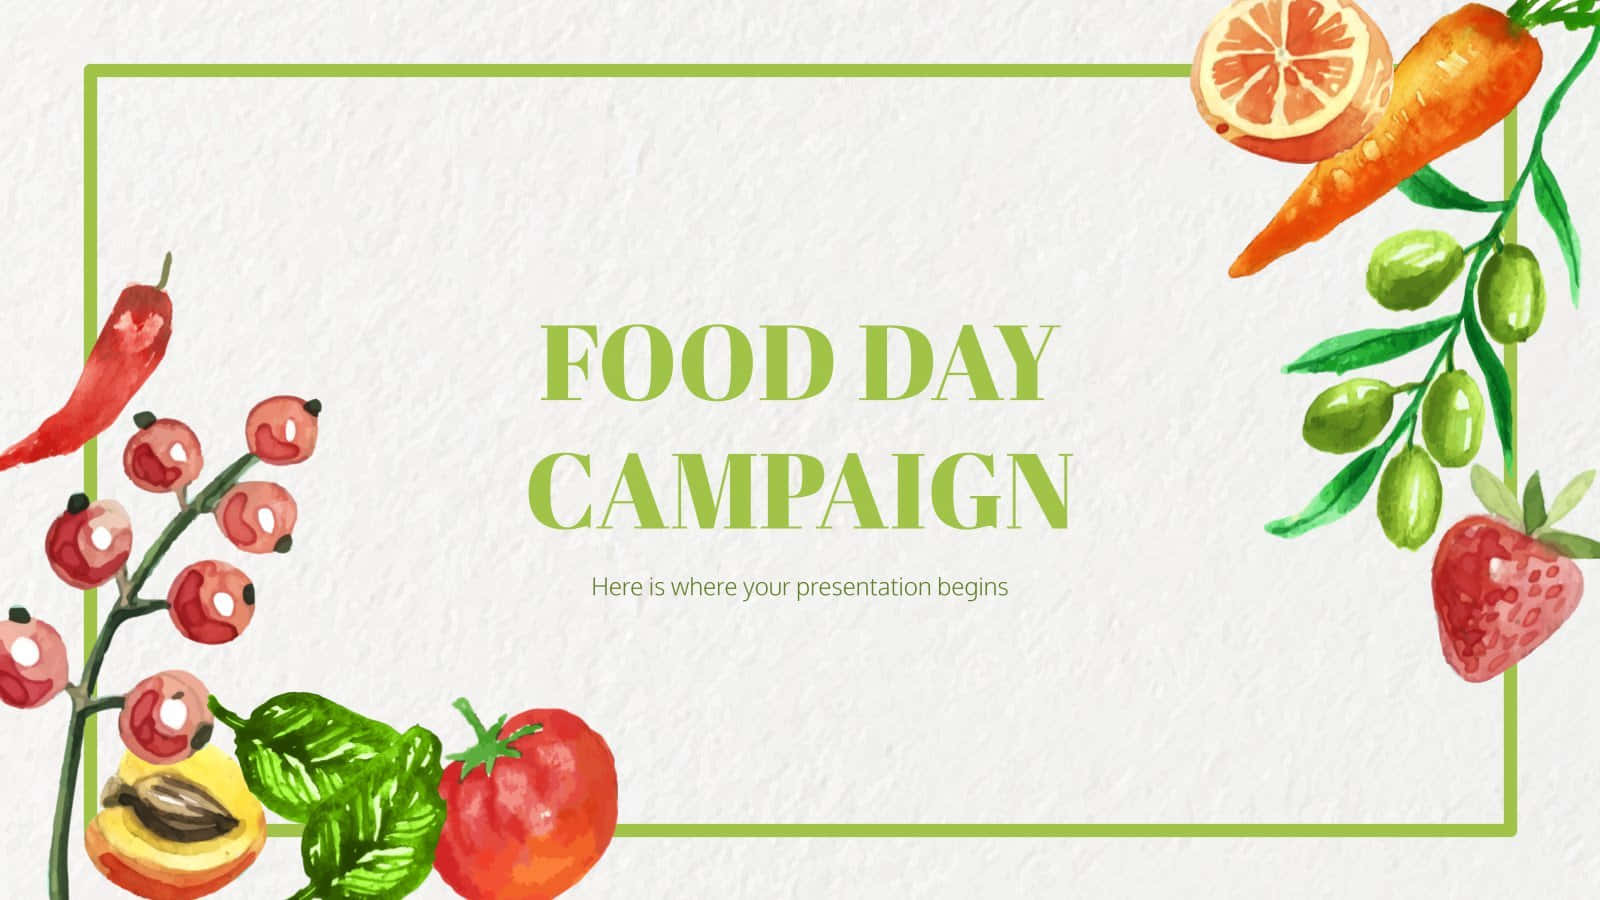 Campañadel Día De La Comida En Formato Psd